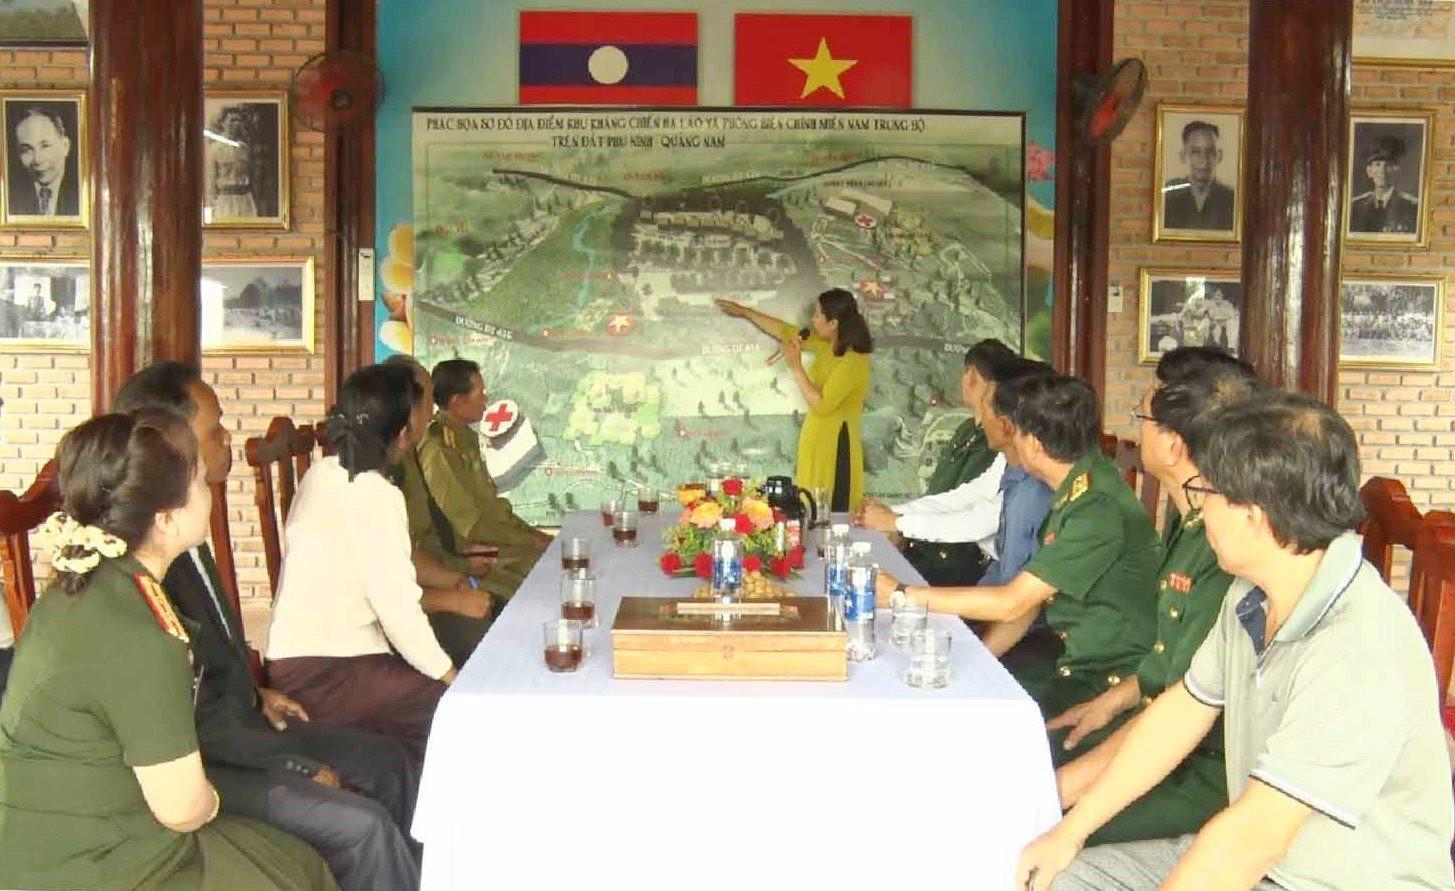 Các đại biểu nghe thuyết minh về lịch sử kháng chiến Hạ Lào và quá trình hình thành Khu kháng chiến Hạ Lào tại Phú Ninh.